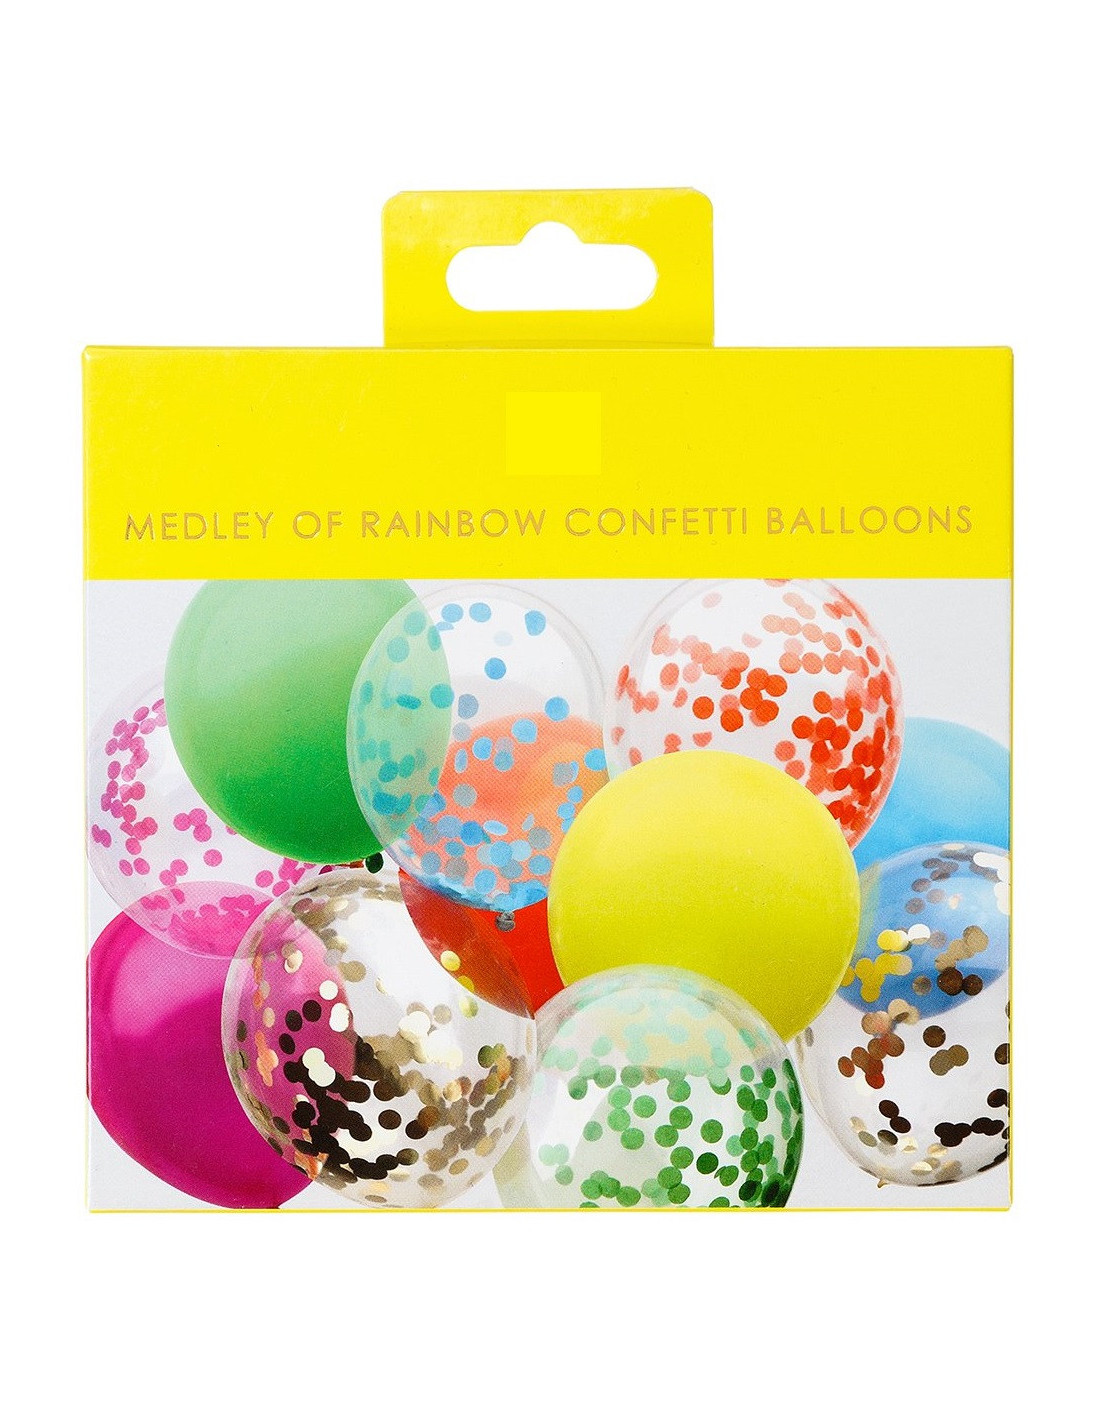 BAL5 - Sticker frise de ballons dorés et blancs